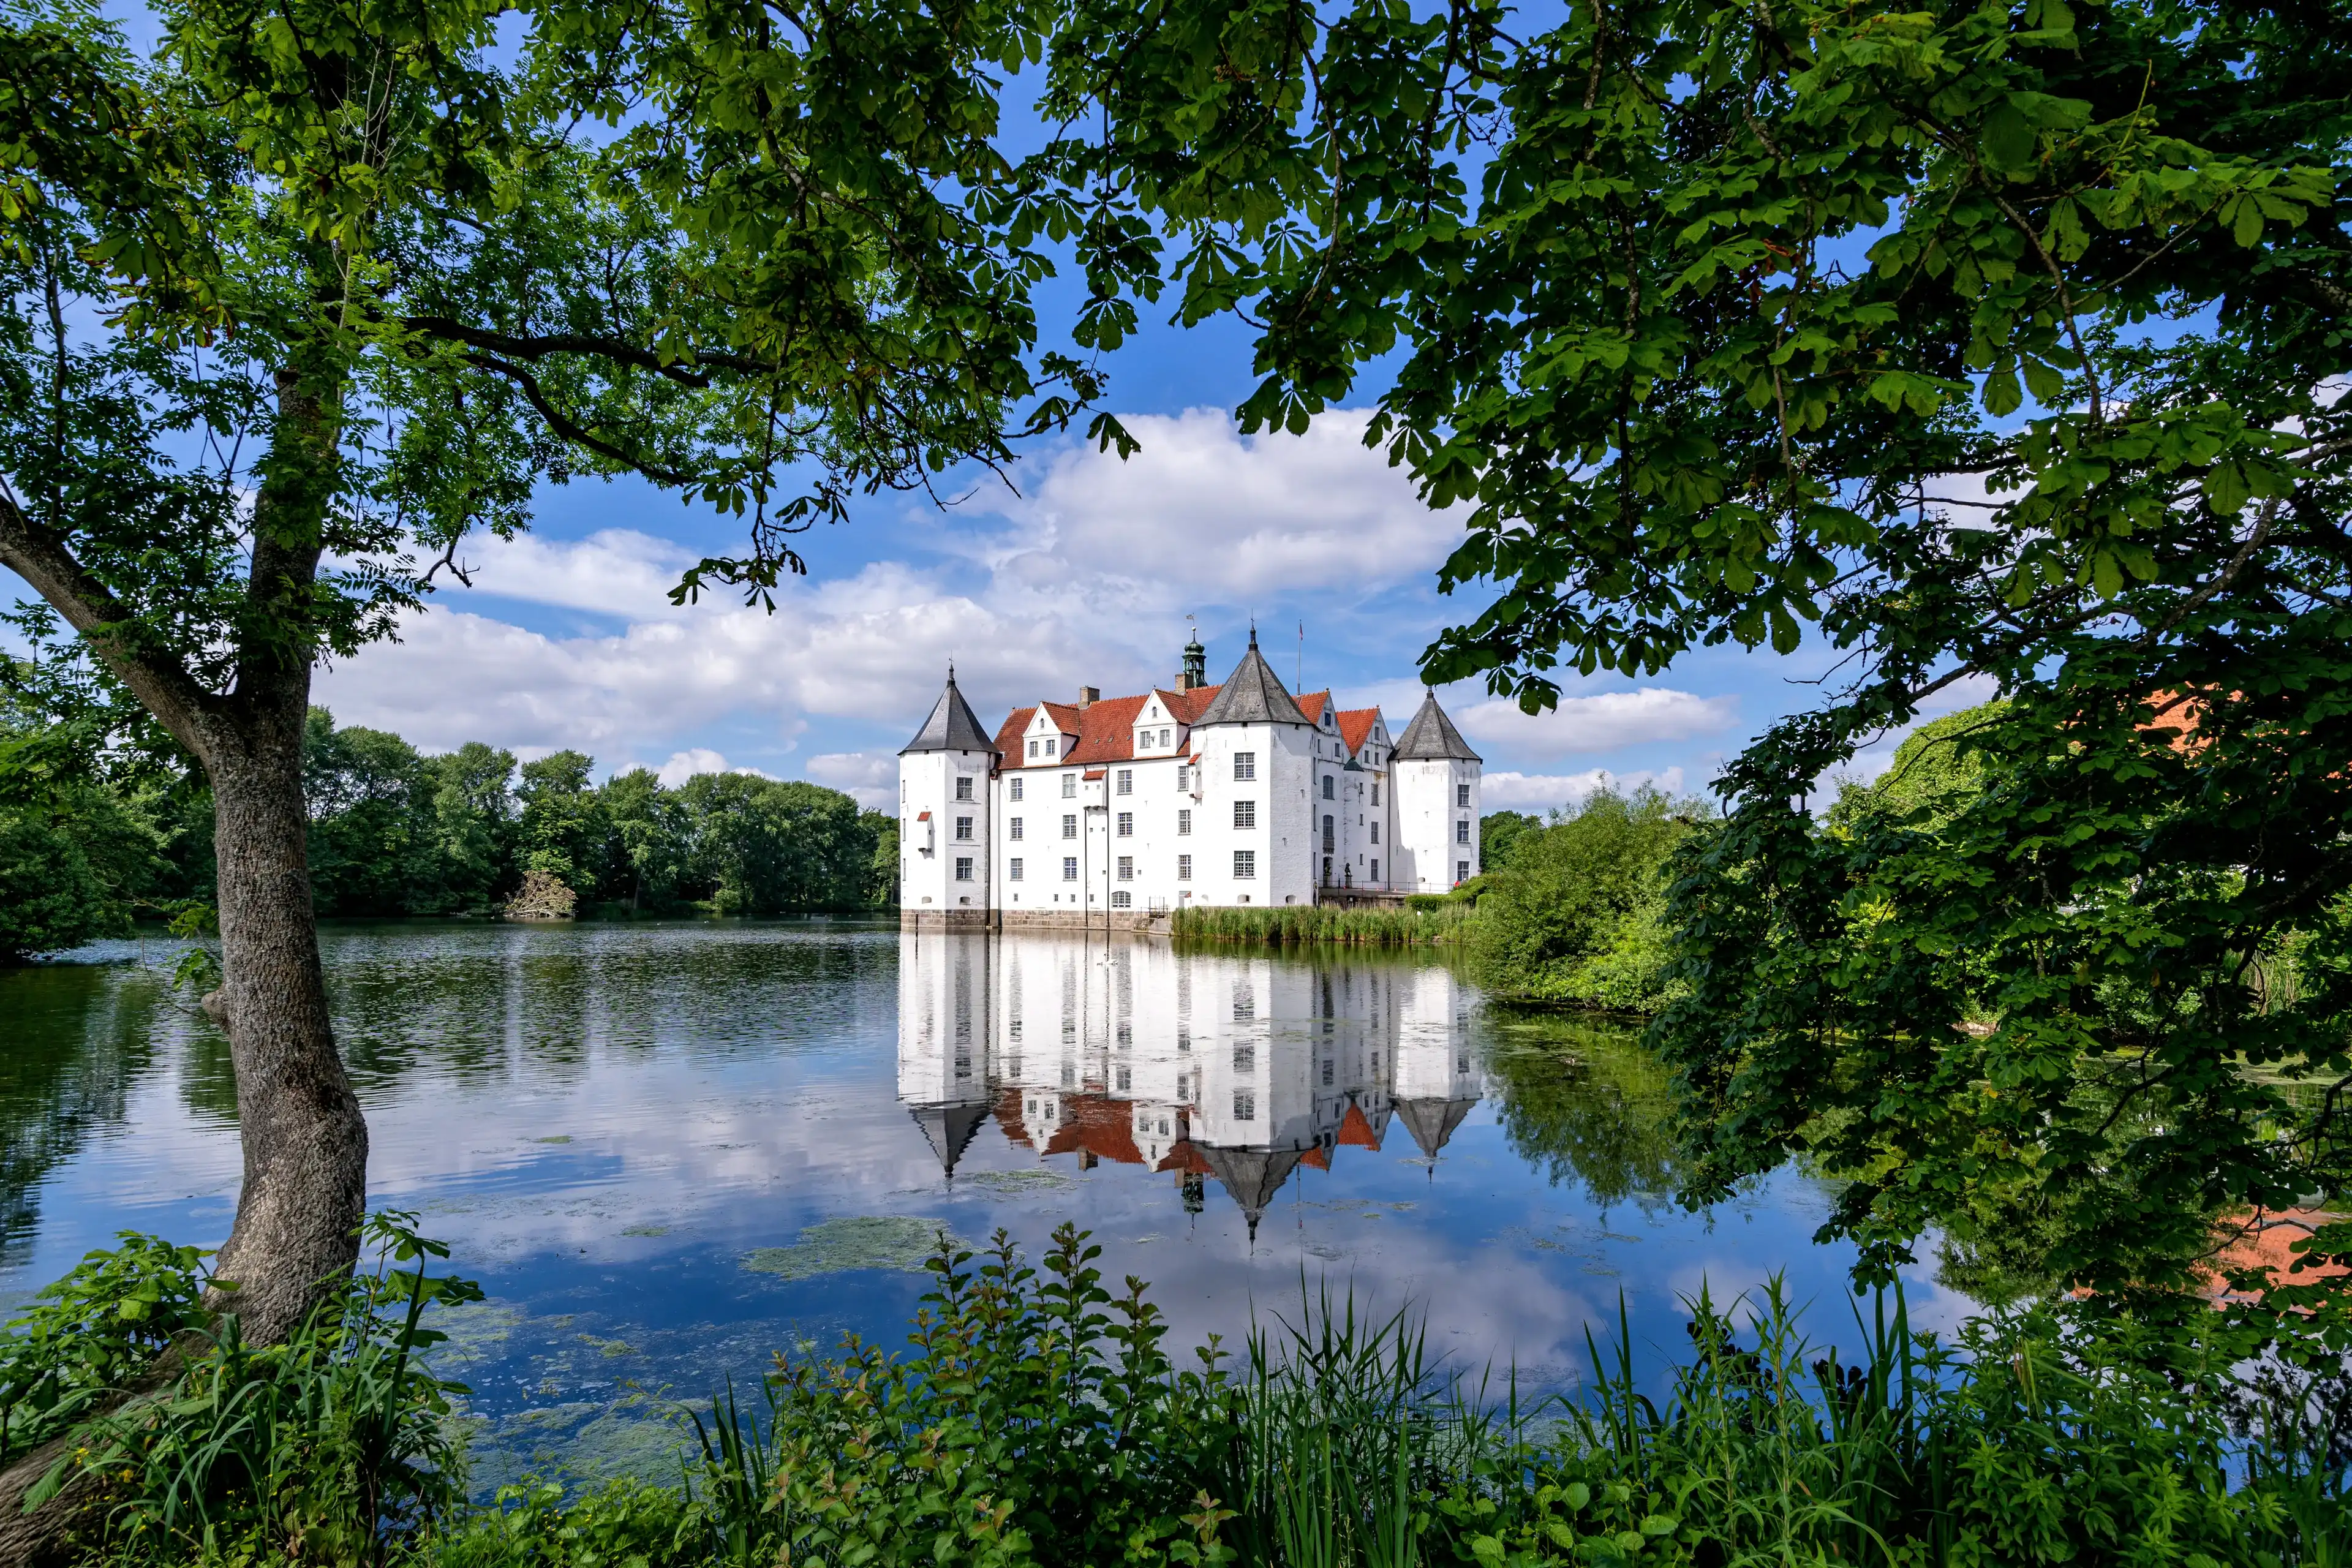 Best Schleswig hotels. Cheap hotels in Schleswig, Germany